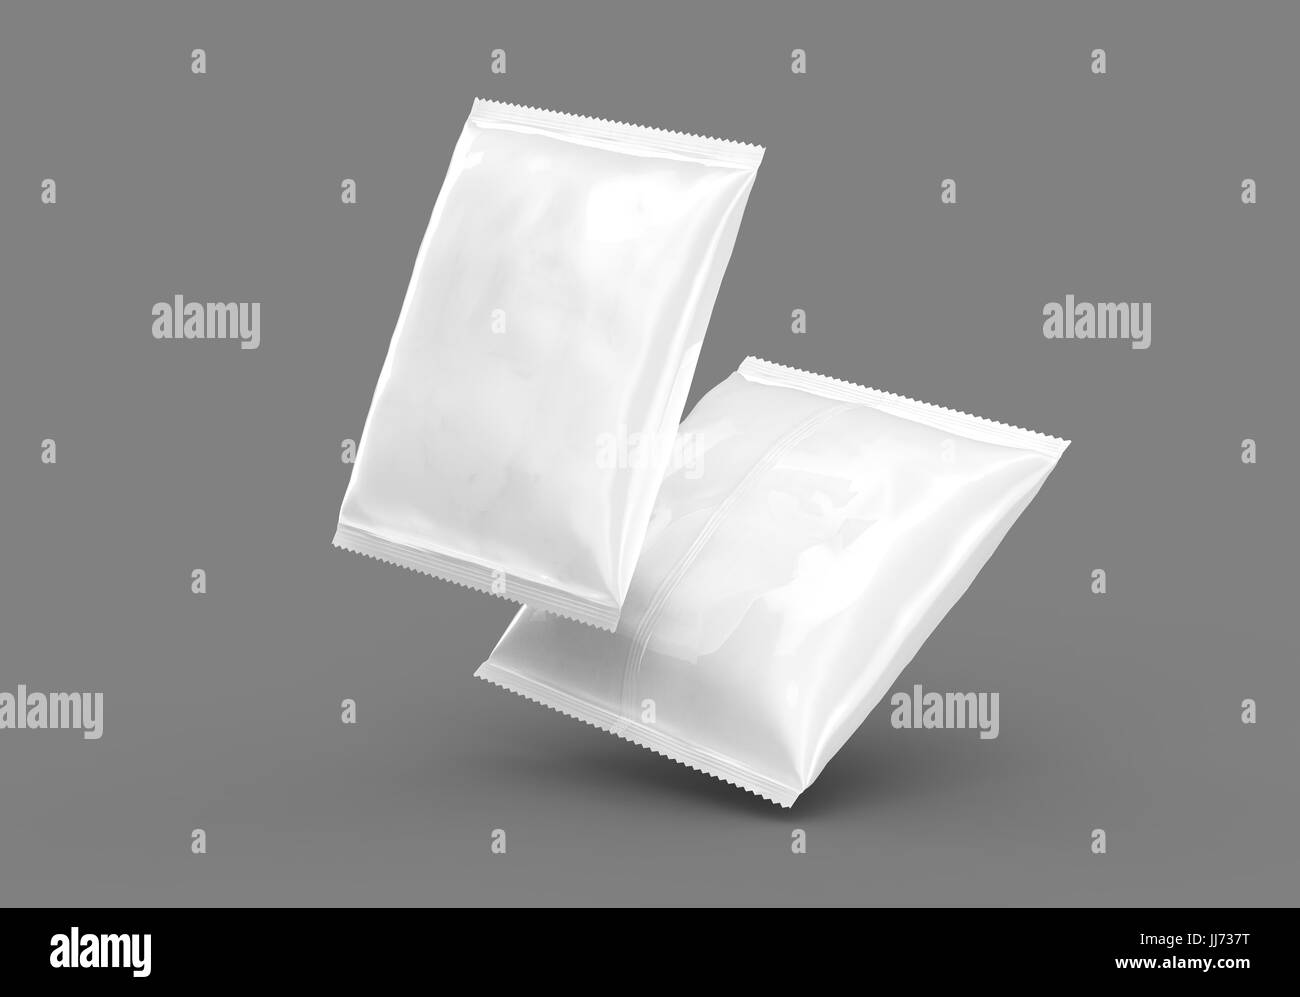 Folie Essen Paket Mockup, 3d Rendering weißes Paketvorlage für die Gestaltung Verwendung auf dunkelgrauen Hintergrund isoliert Stockfoto